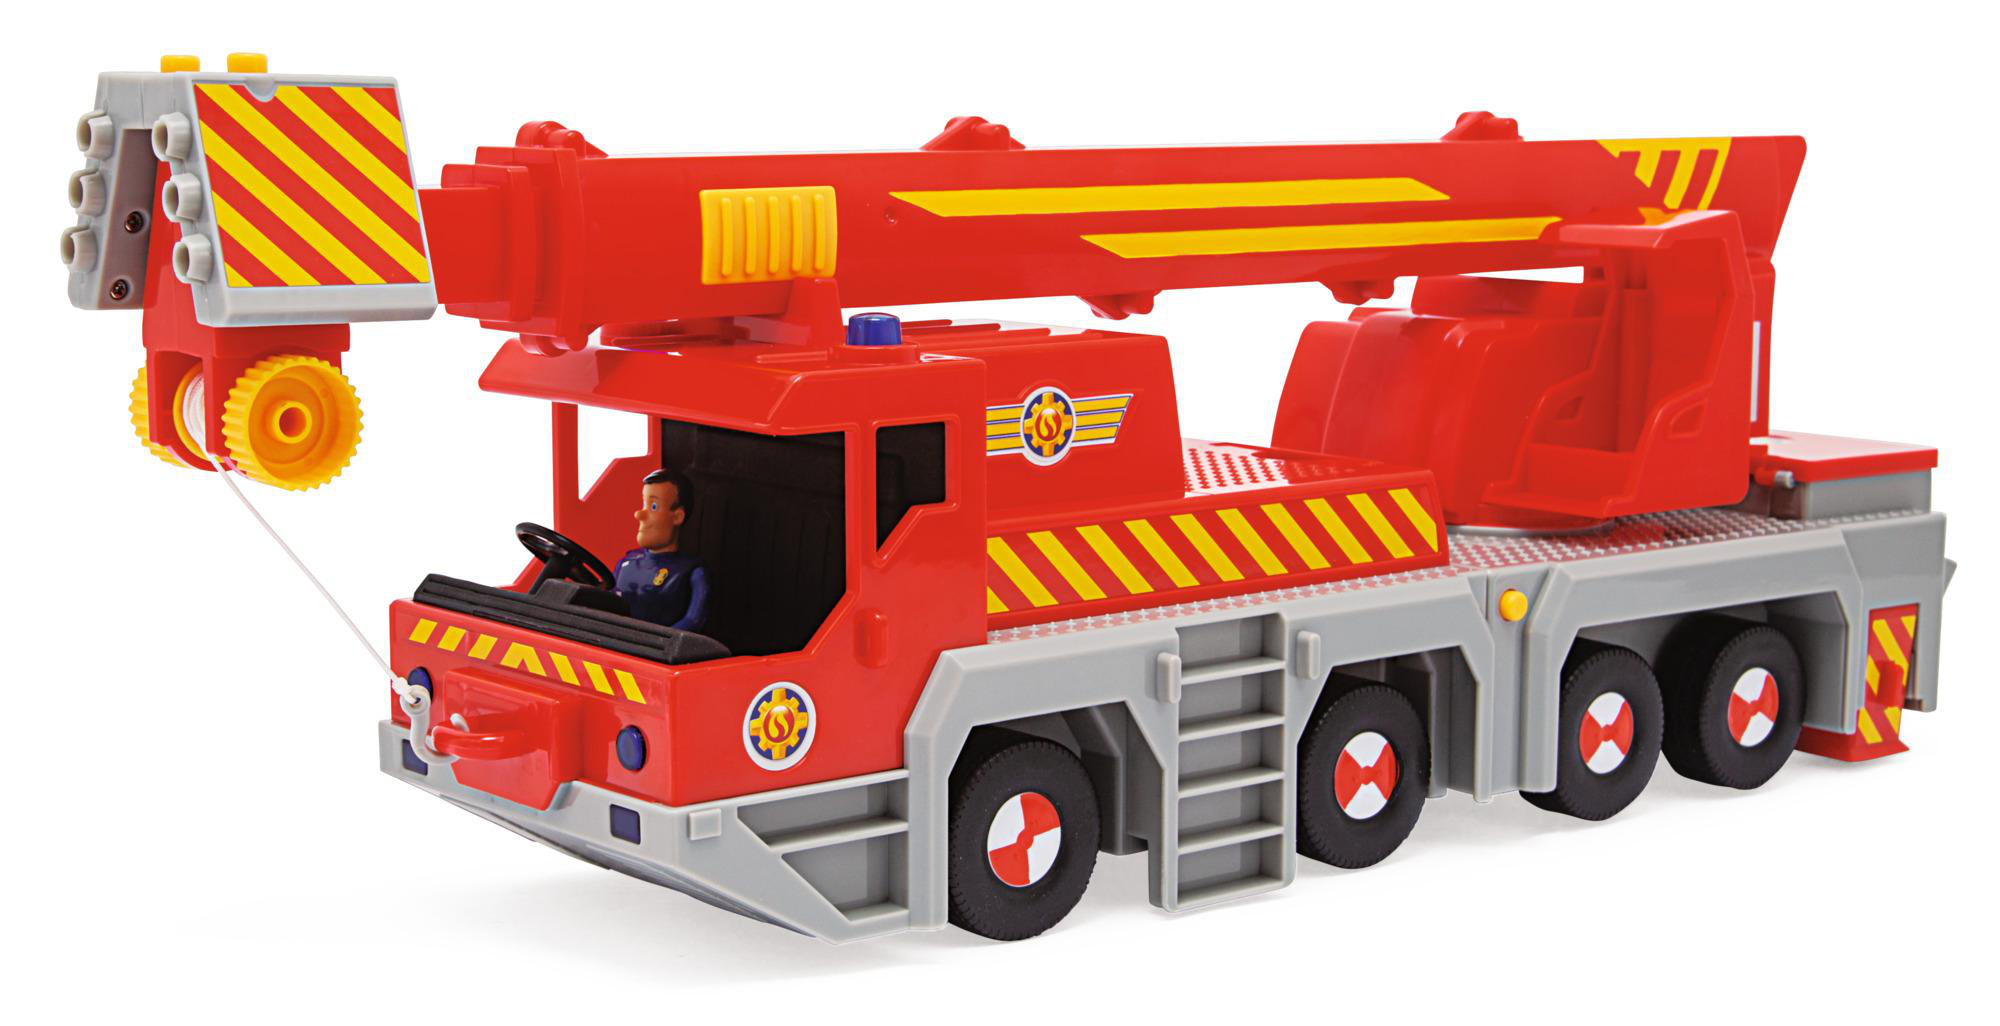 SIMBA TOYS Feuerwehrmann Rettungskran Mehrfarbig Spielzeugauto Sam 2-in-1